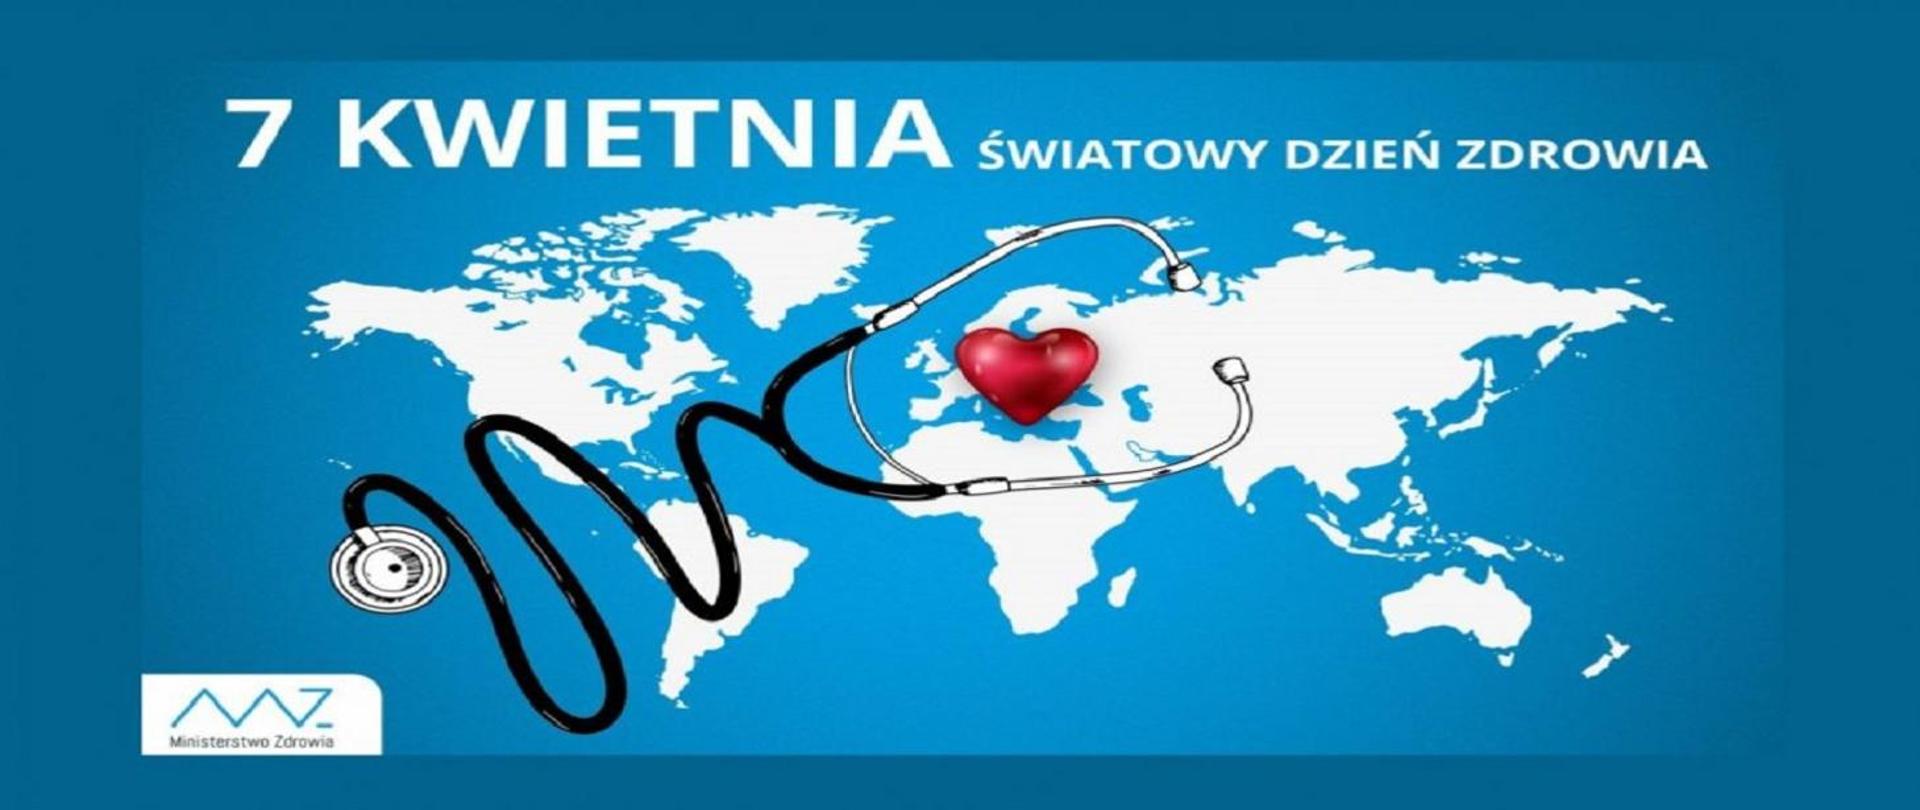 Logo Światowego Dnia Zdrowia, mapa świata, serce, stetoskop